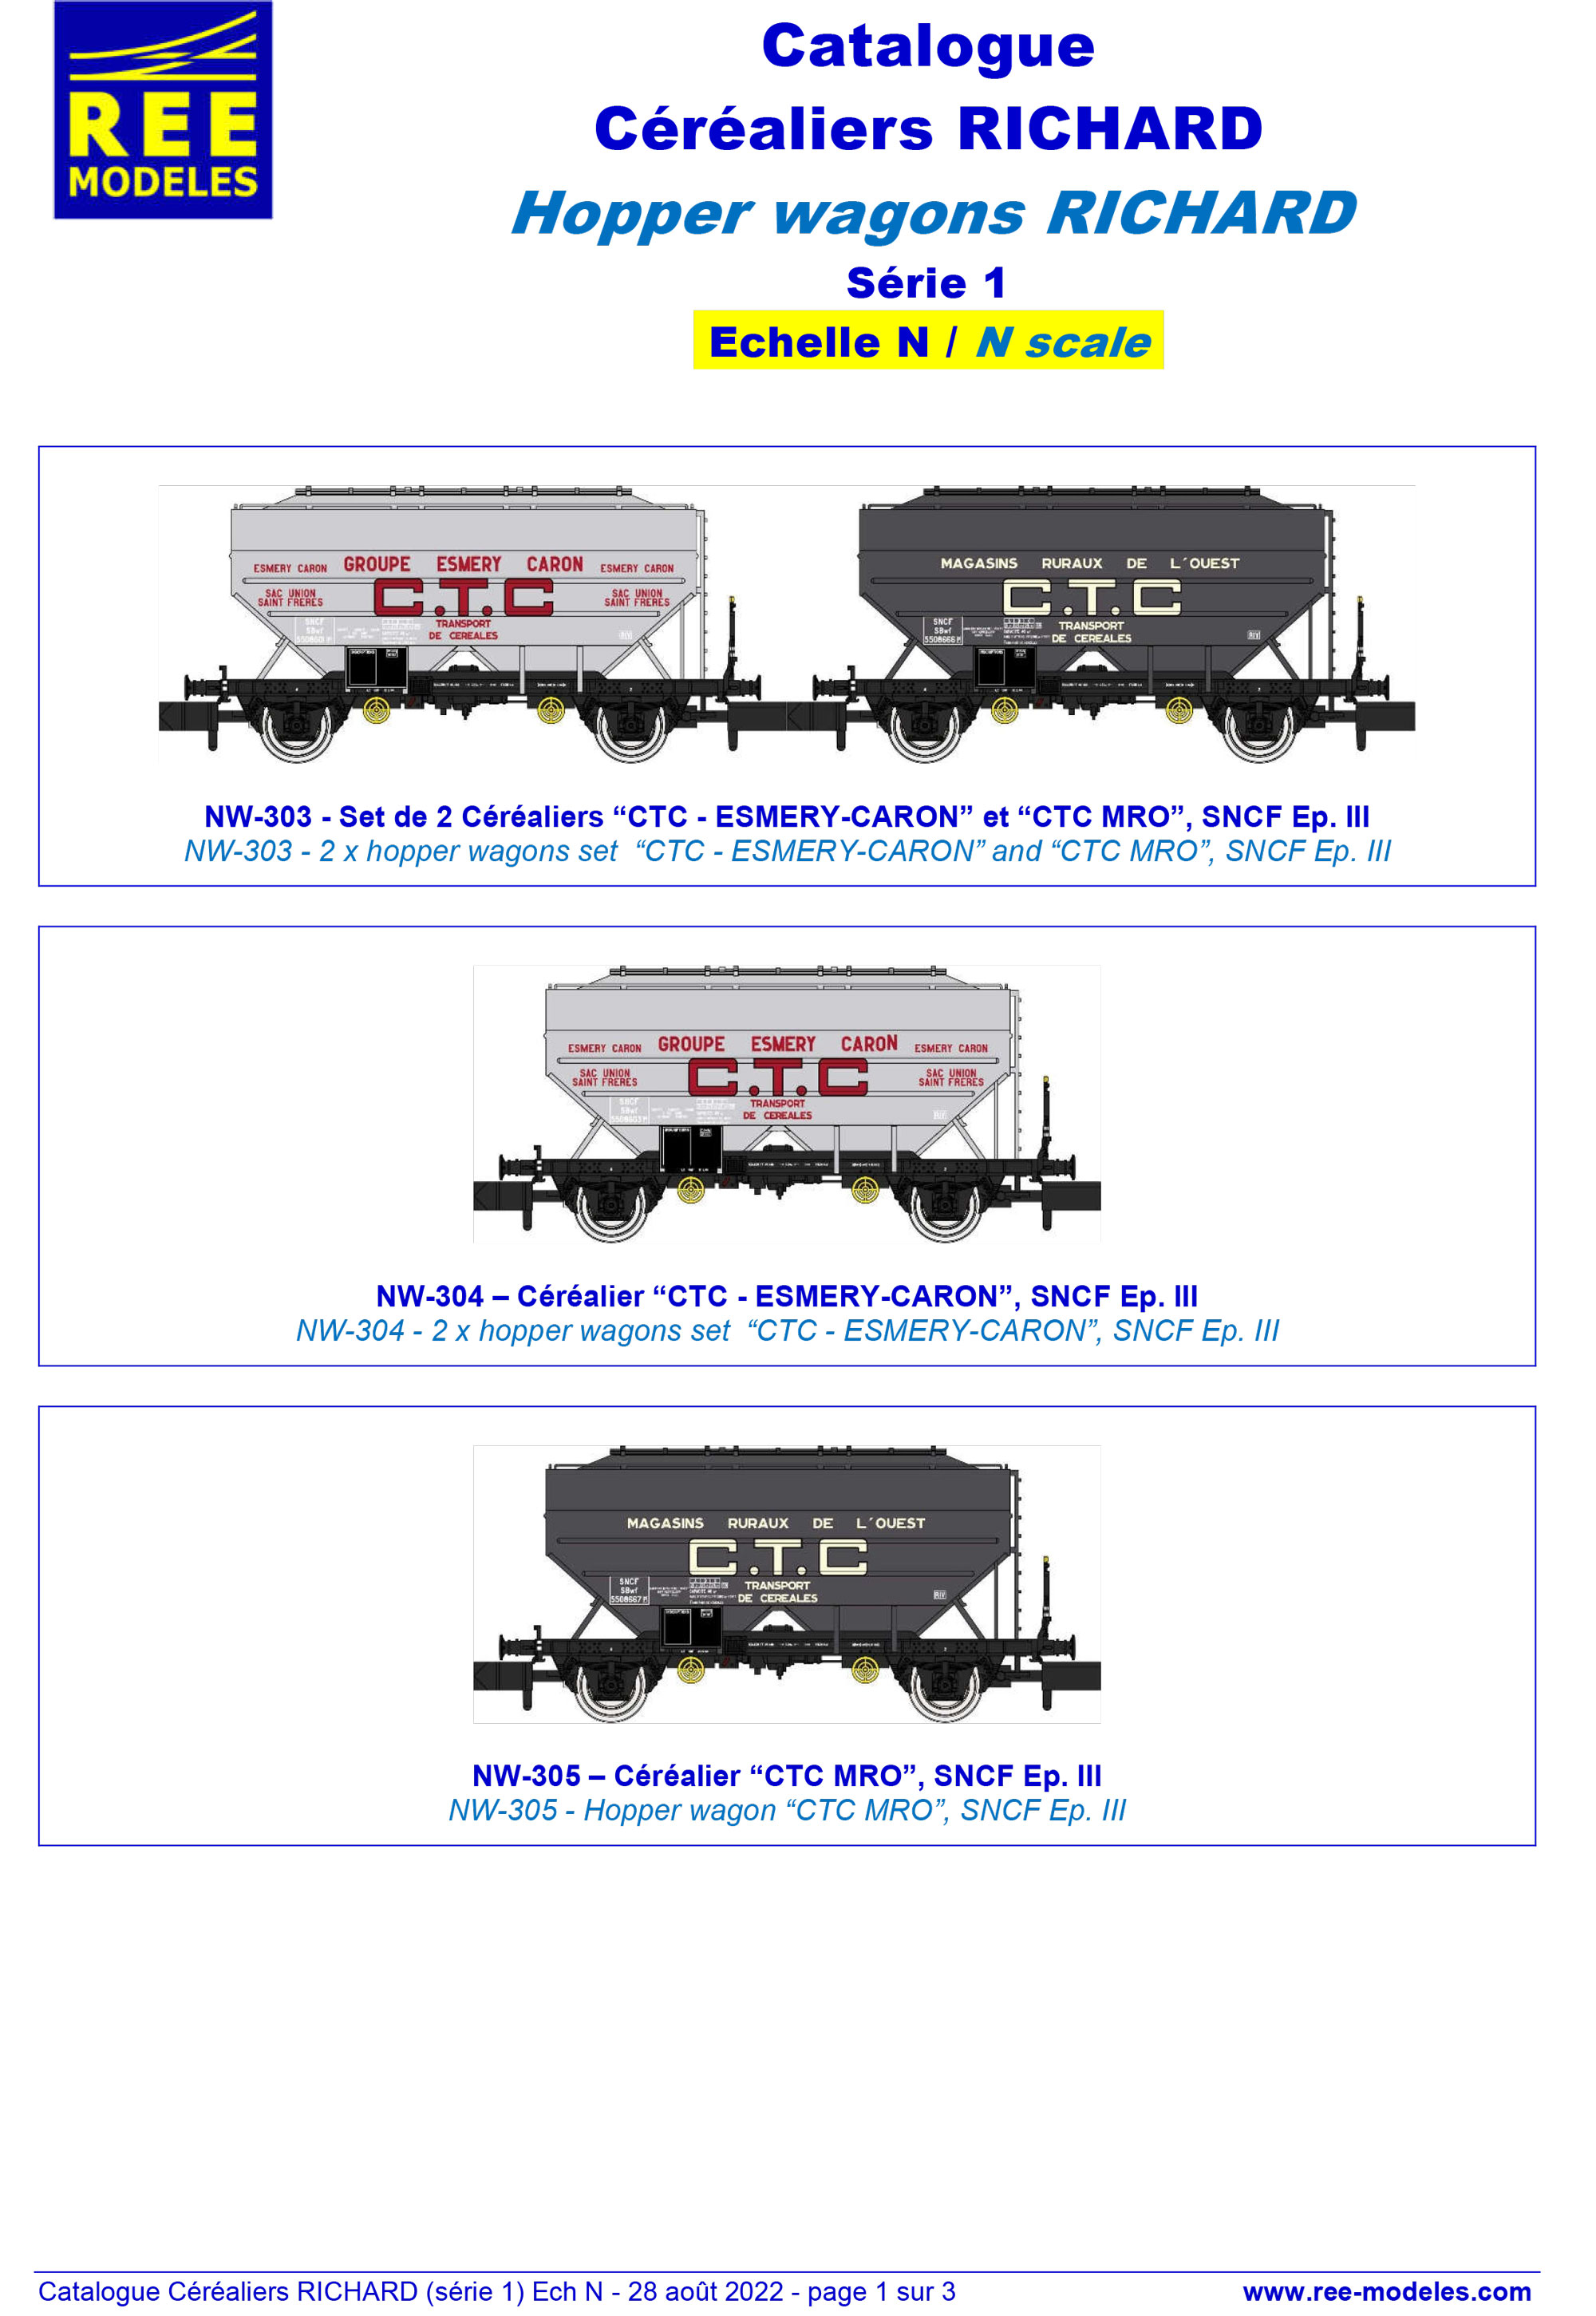 Rails Europ Express - Hopper wagons RICHARD